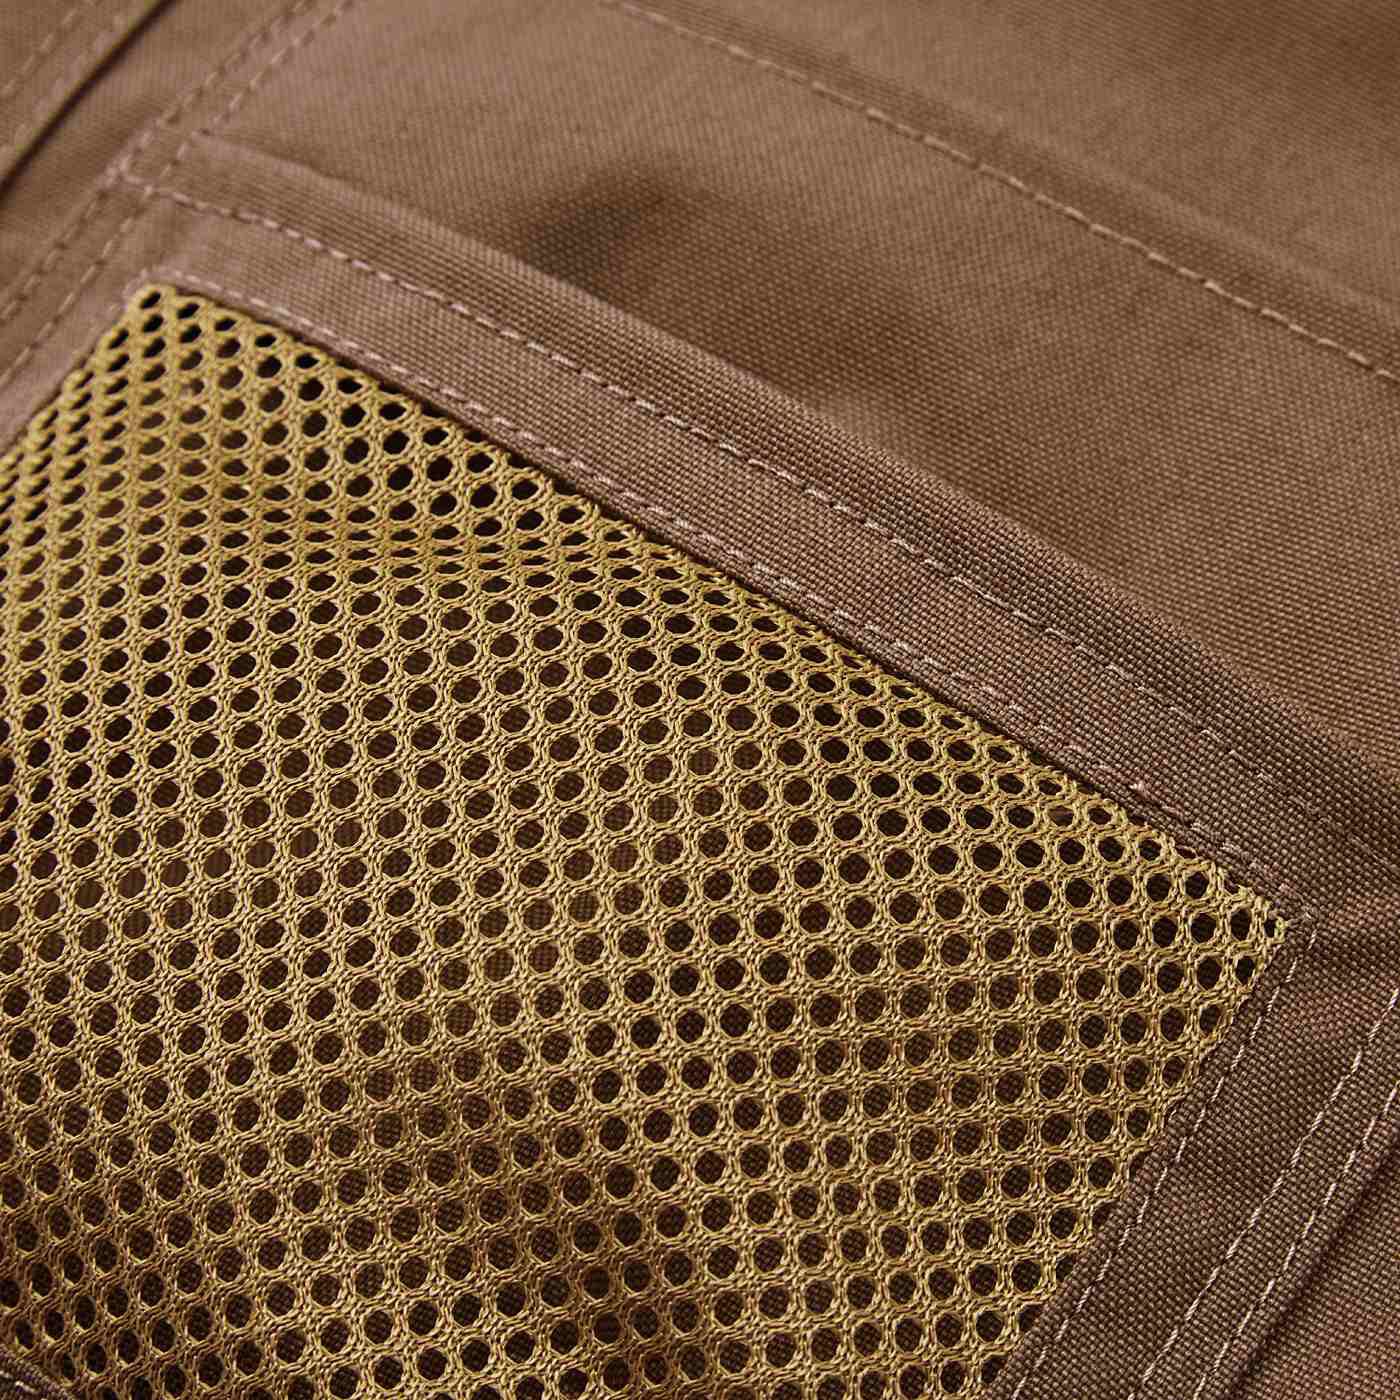 Real Stock|UP.de　着られるバッグ（TM） 付けポケットいっぱい 脚さばきのよいはっ水ショートエプロン|中が見えるメッシュ素材のポケット。